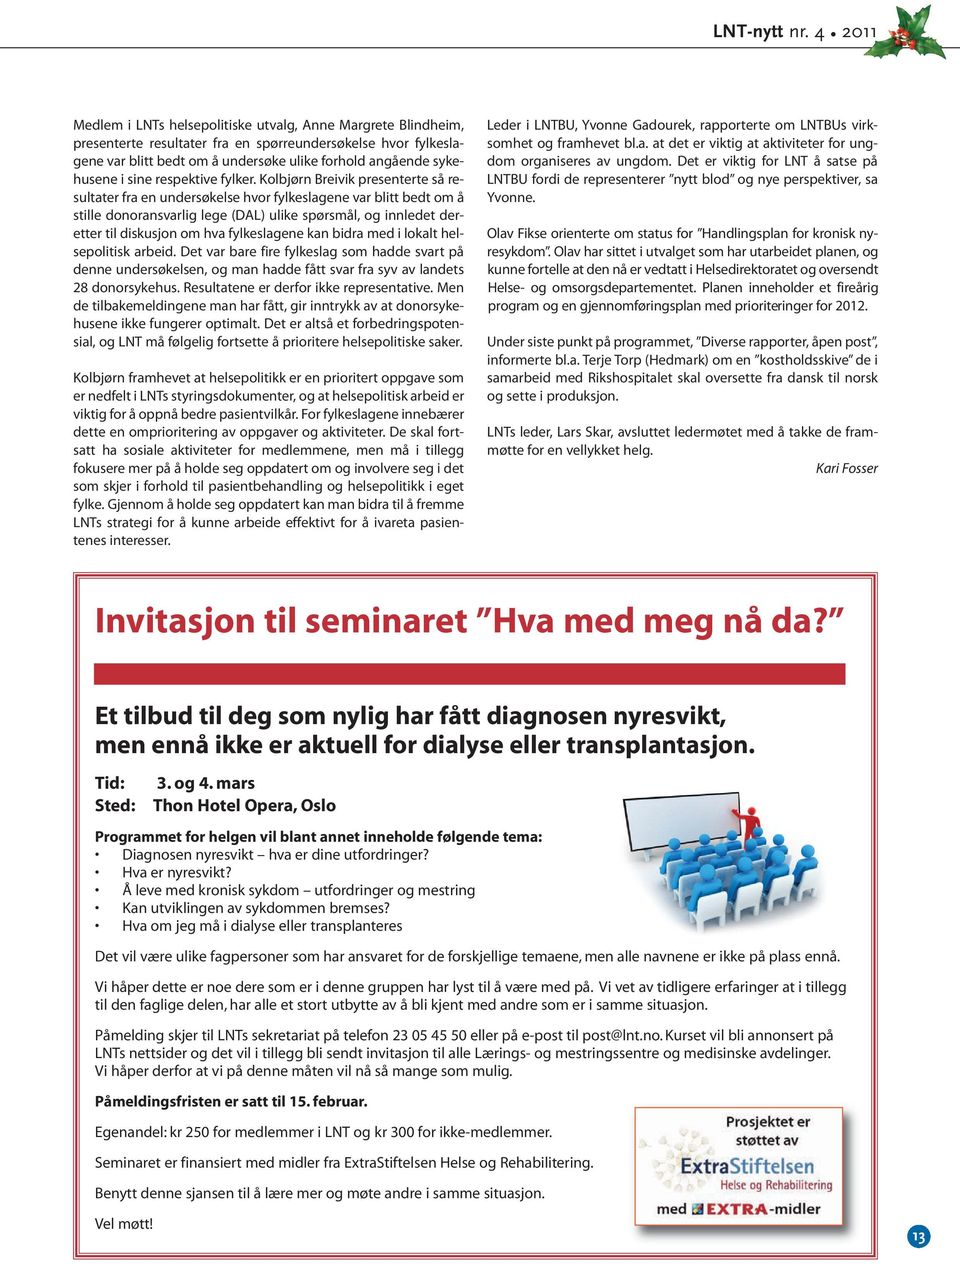 Kolbjørn Breivik presenterte så resultater fra en undersøkelse hvor fylkeslagene var blitt bedt om å stille donoransvarlig lege (DAL) ulike spørsmål, og innledet deretter til diskusjon om hva